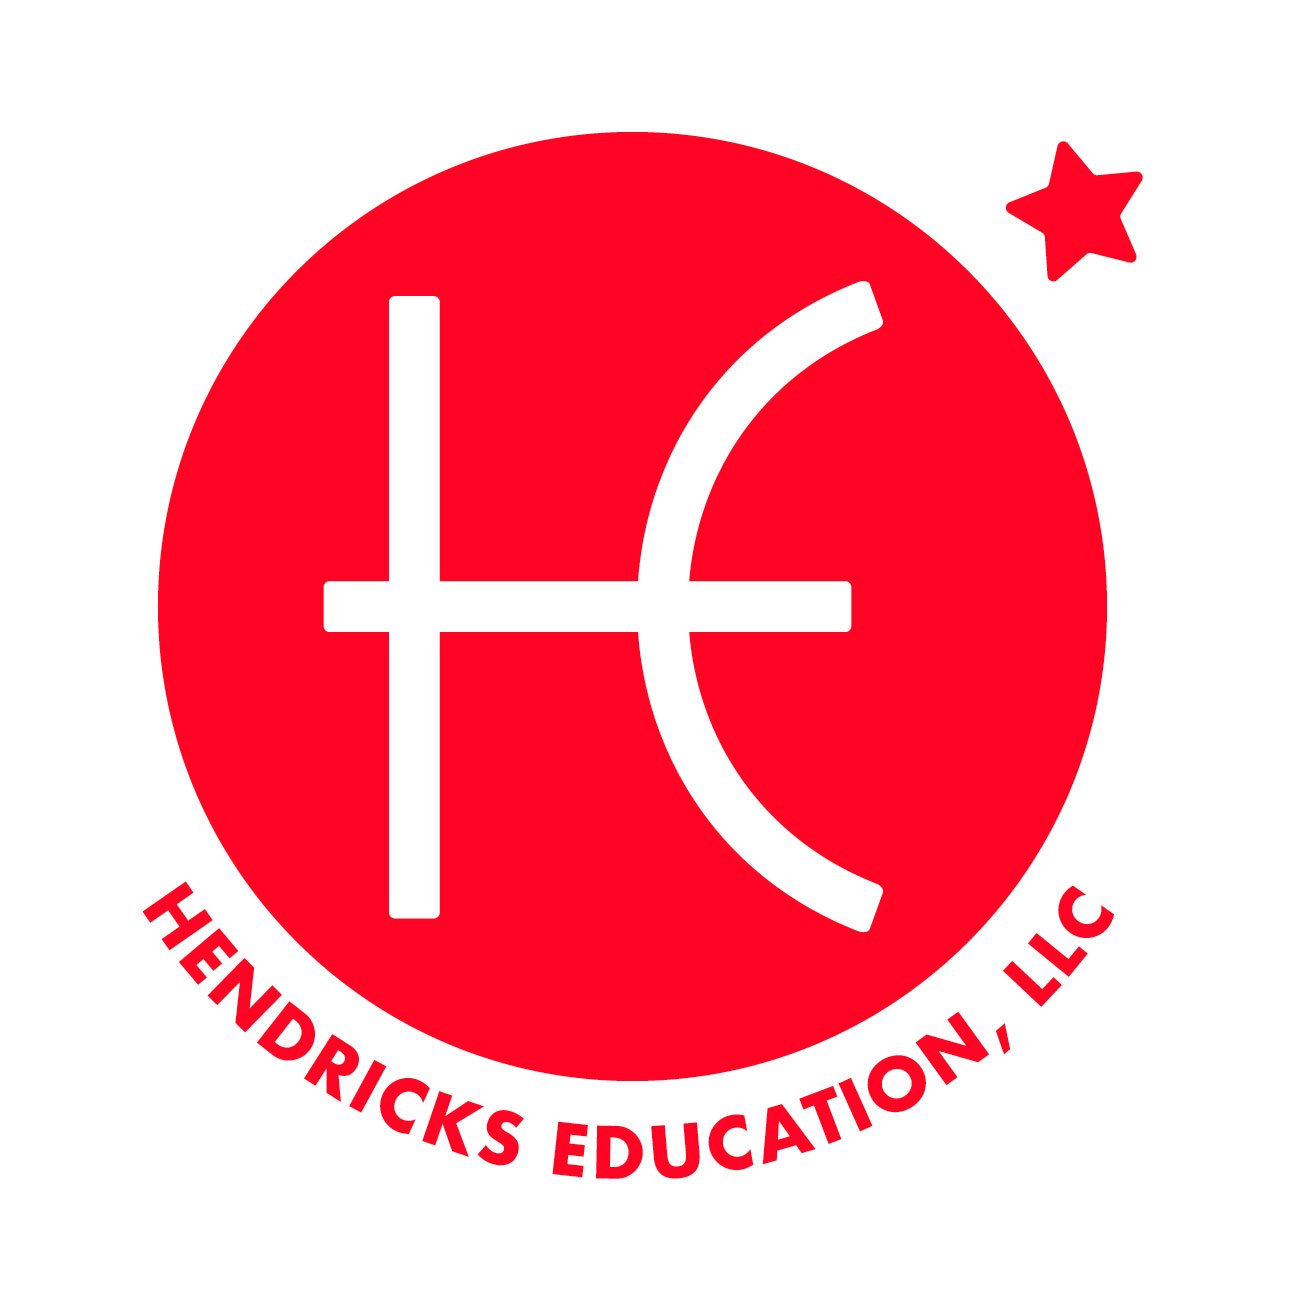 Hendricks Education LLC